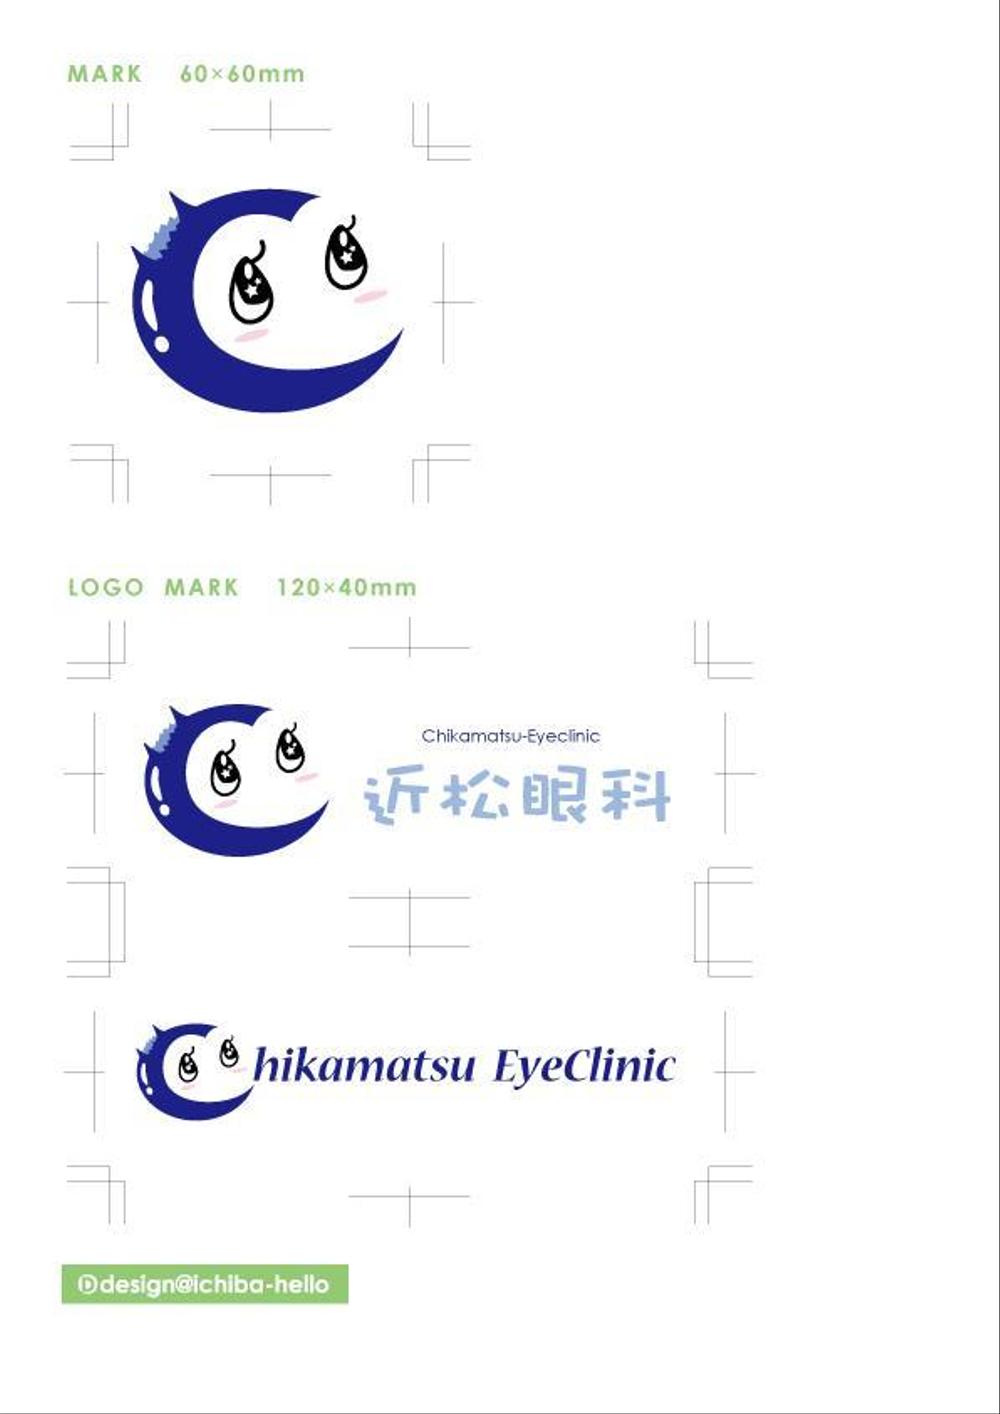 Chikamatsu-Eyeclinic.jpg